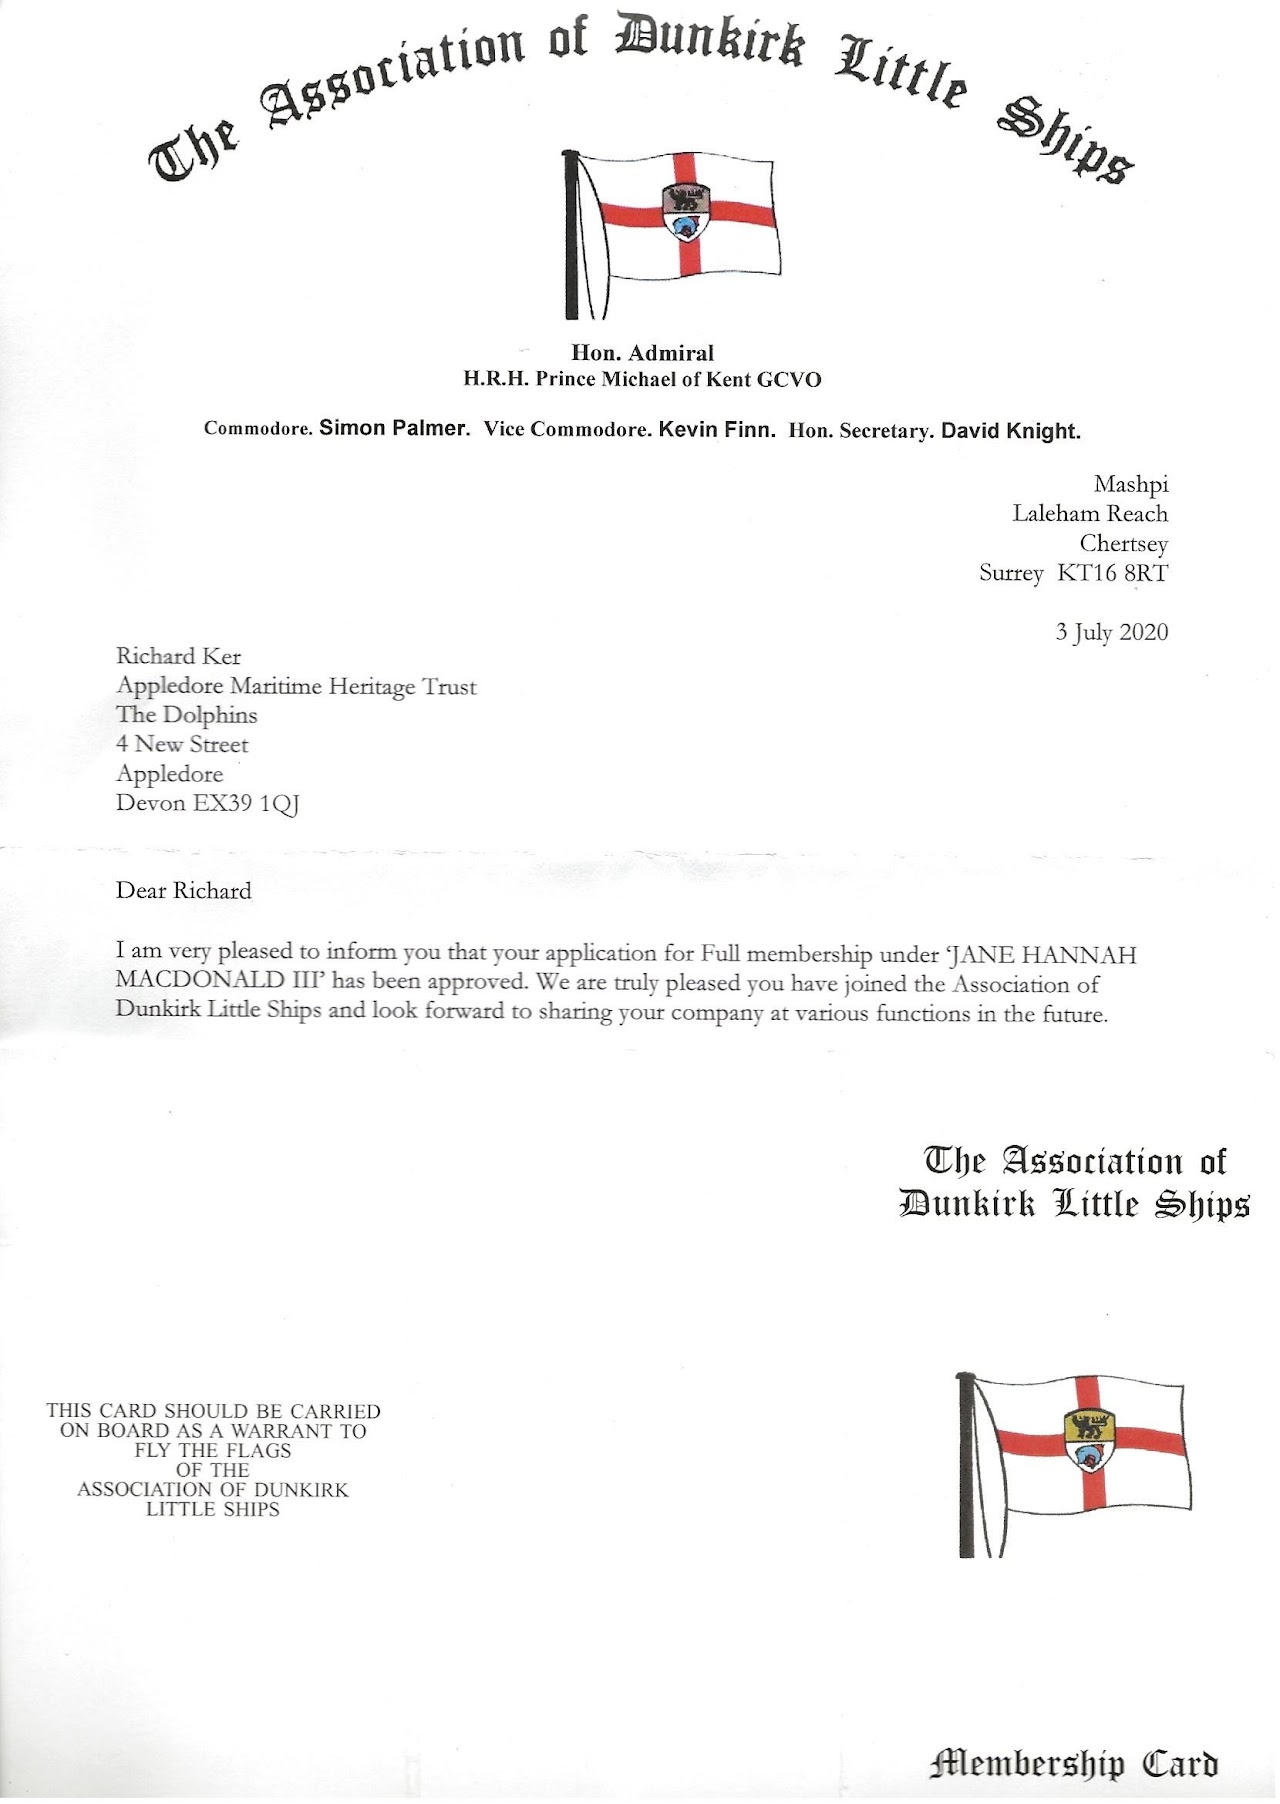 Association of Dunkirk Little Ships membership letter